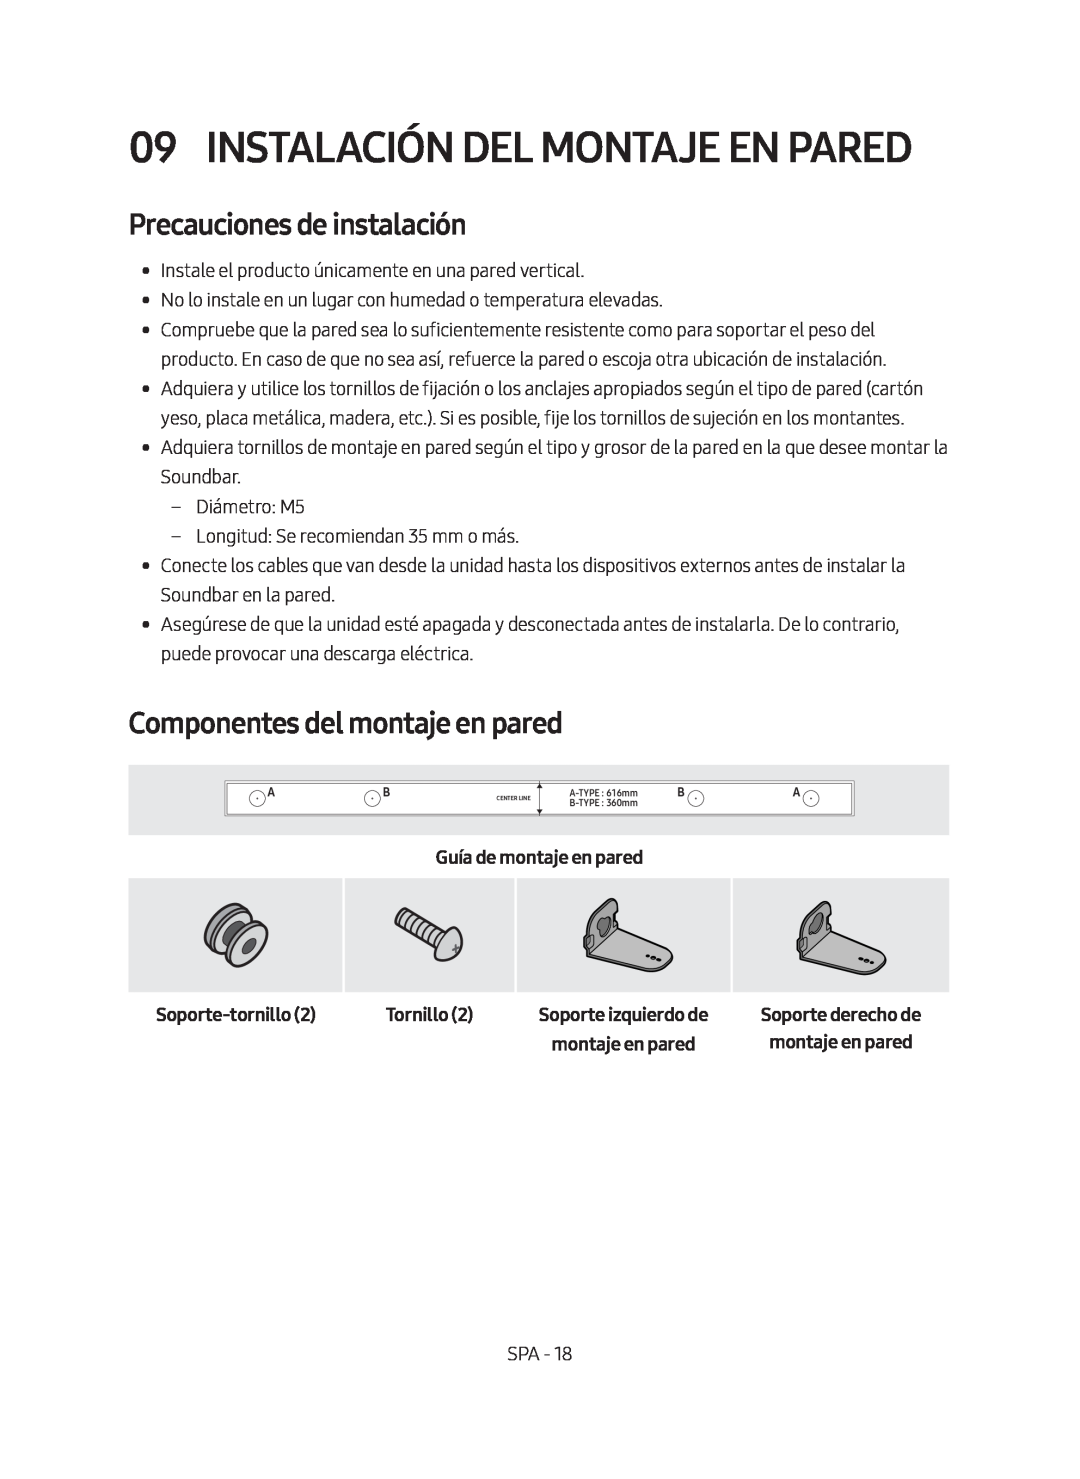 Samsung HW-M450/ZF manual Instalación Del Montaje En Pared, Precauciones de instalación, Componentes del montaje en pared 